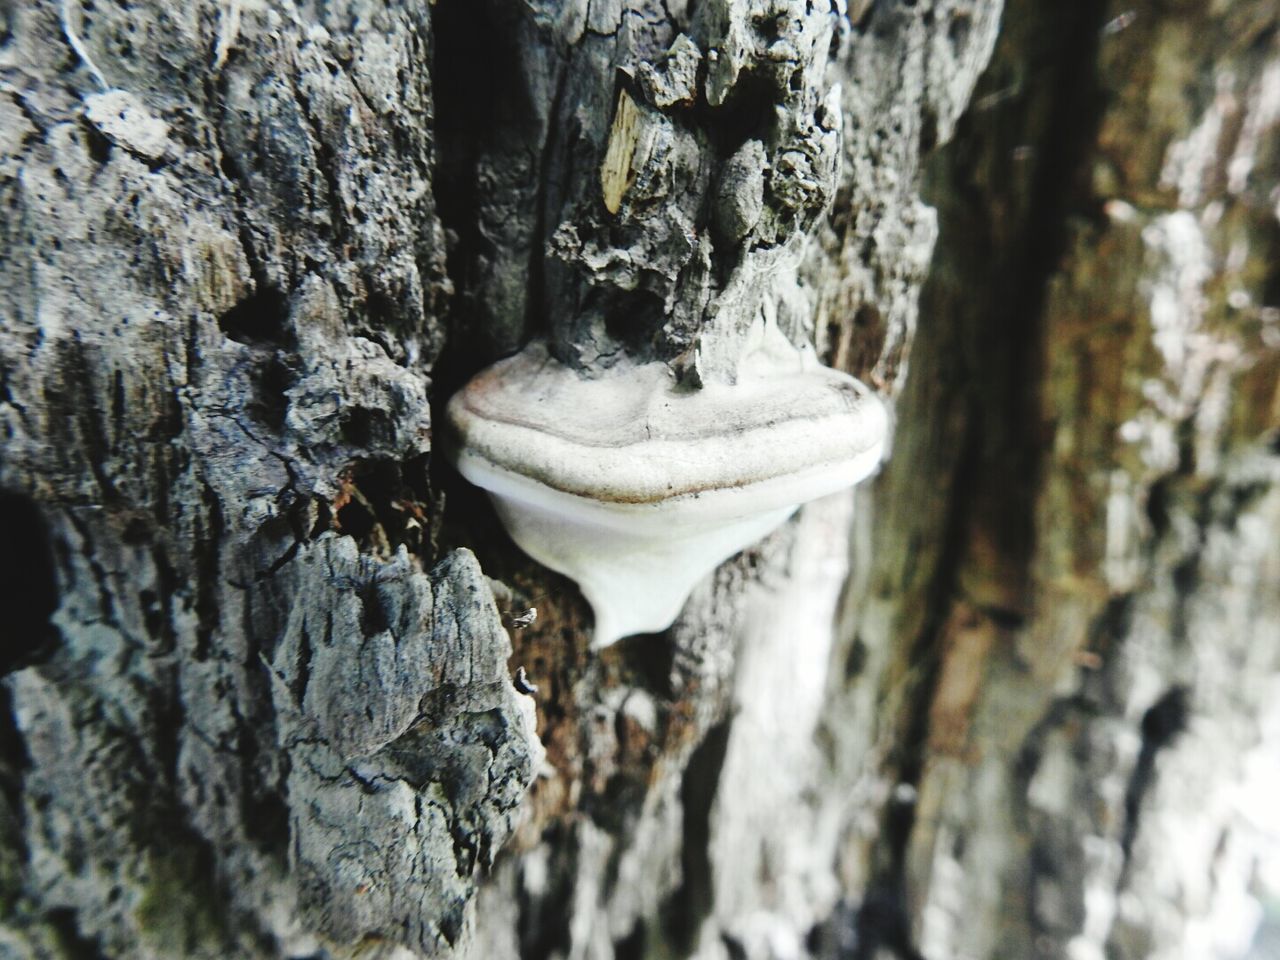 CLOSE-UP OF MUSHROOM ON TREE TRUNK